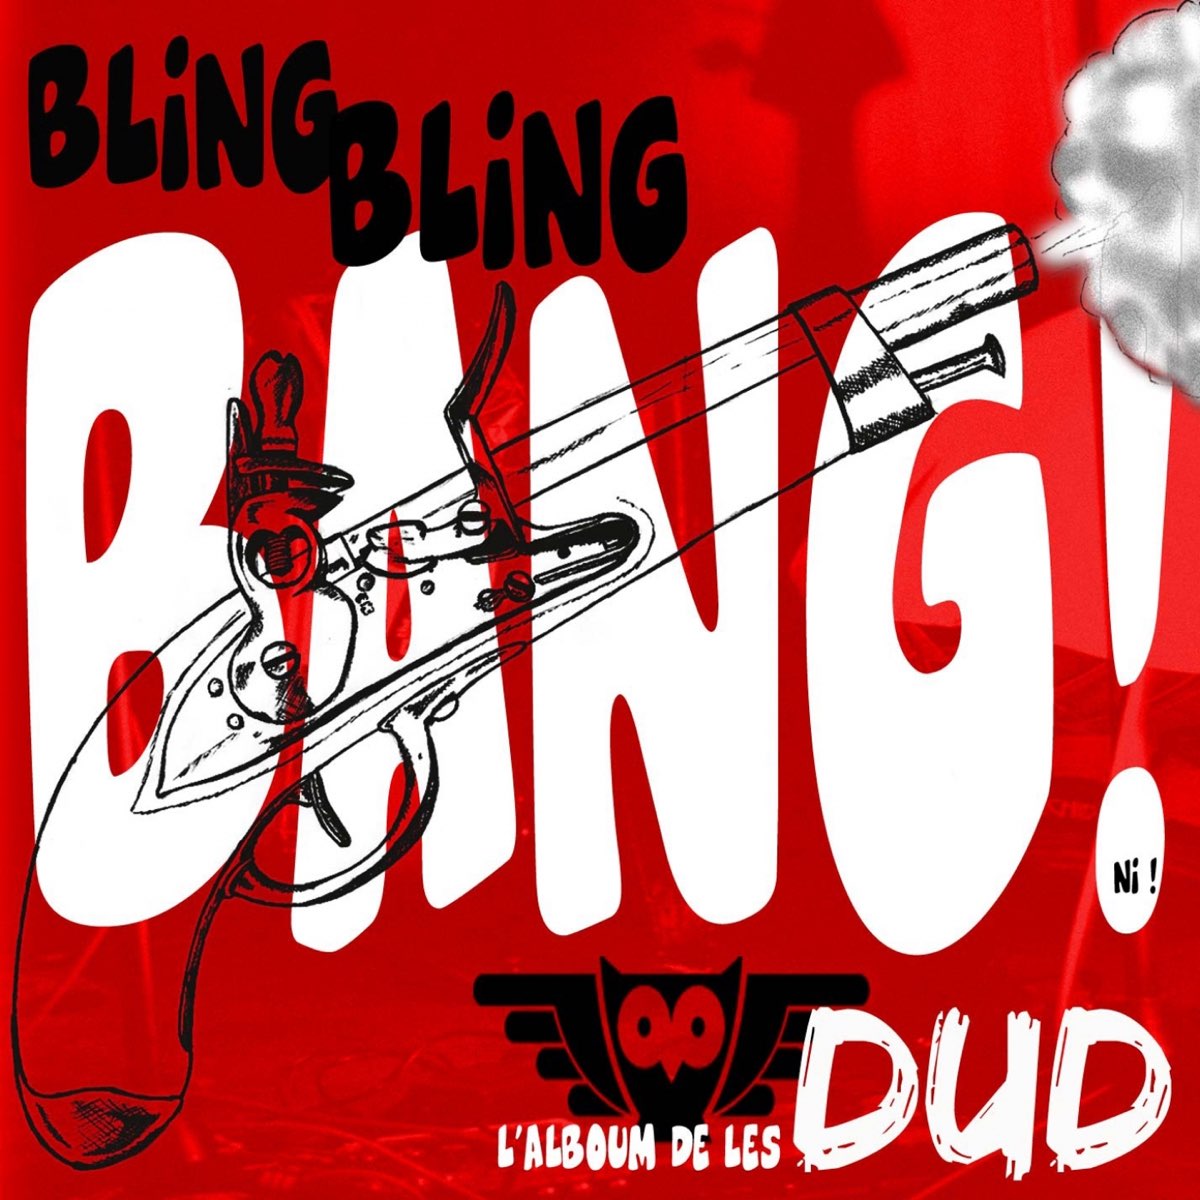 Bling bang bang osu